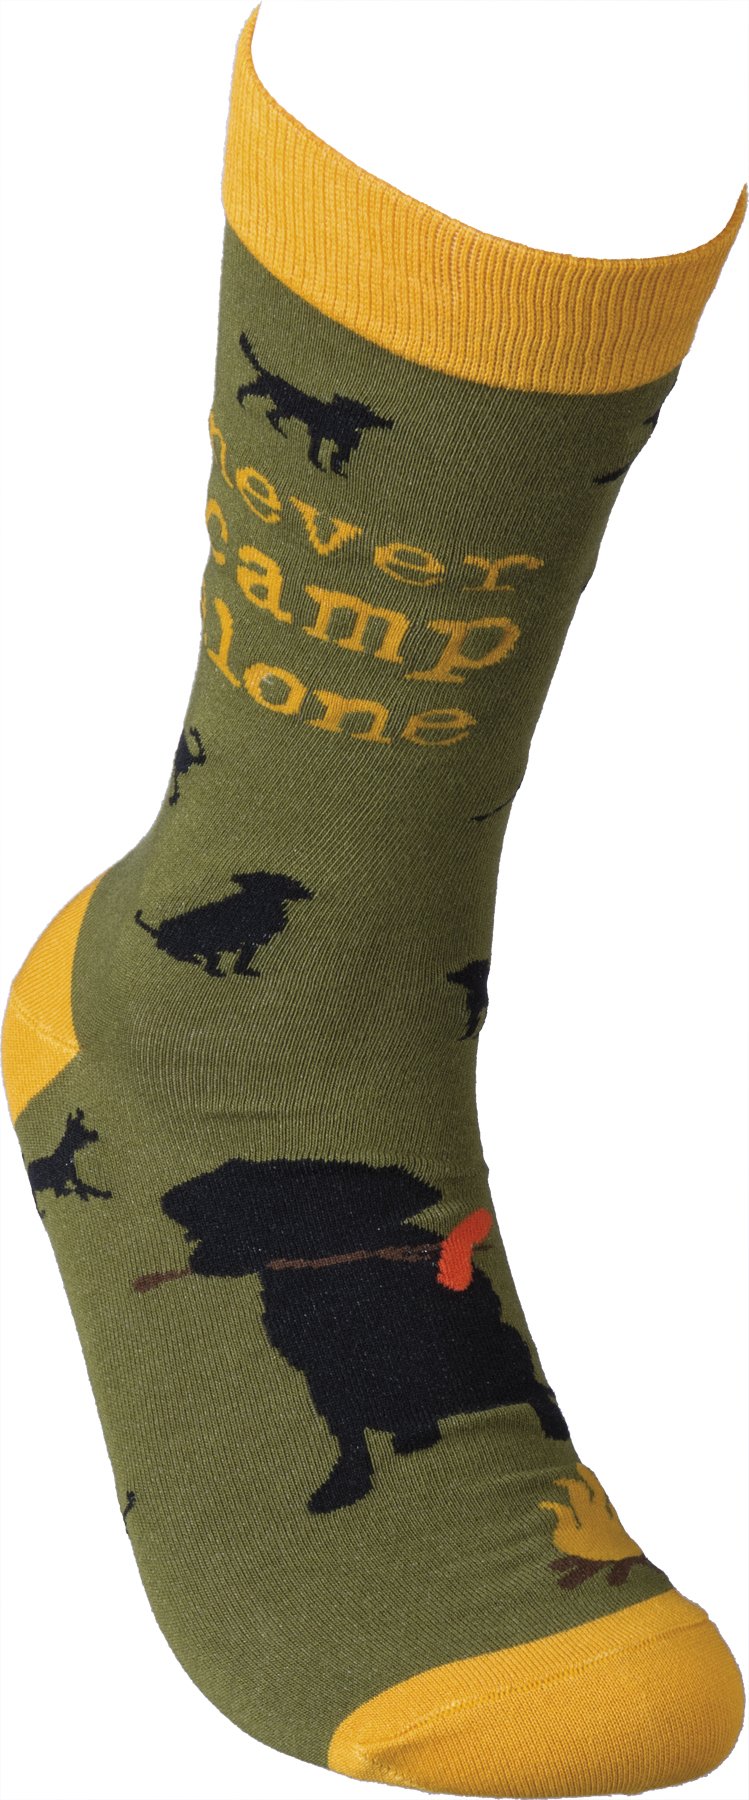 [Australia] - Good Dog Socks (Never Camp Alone) 